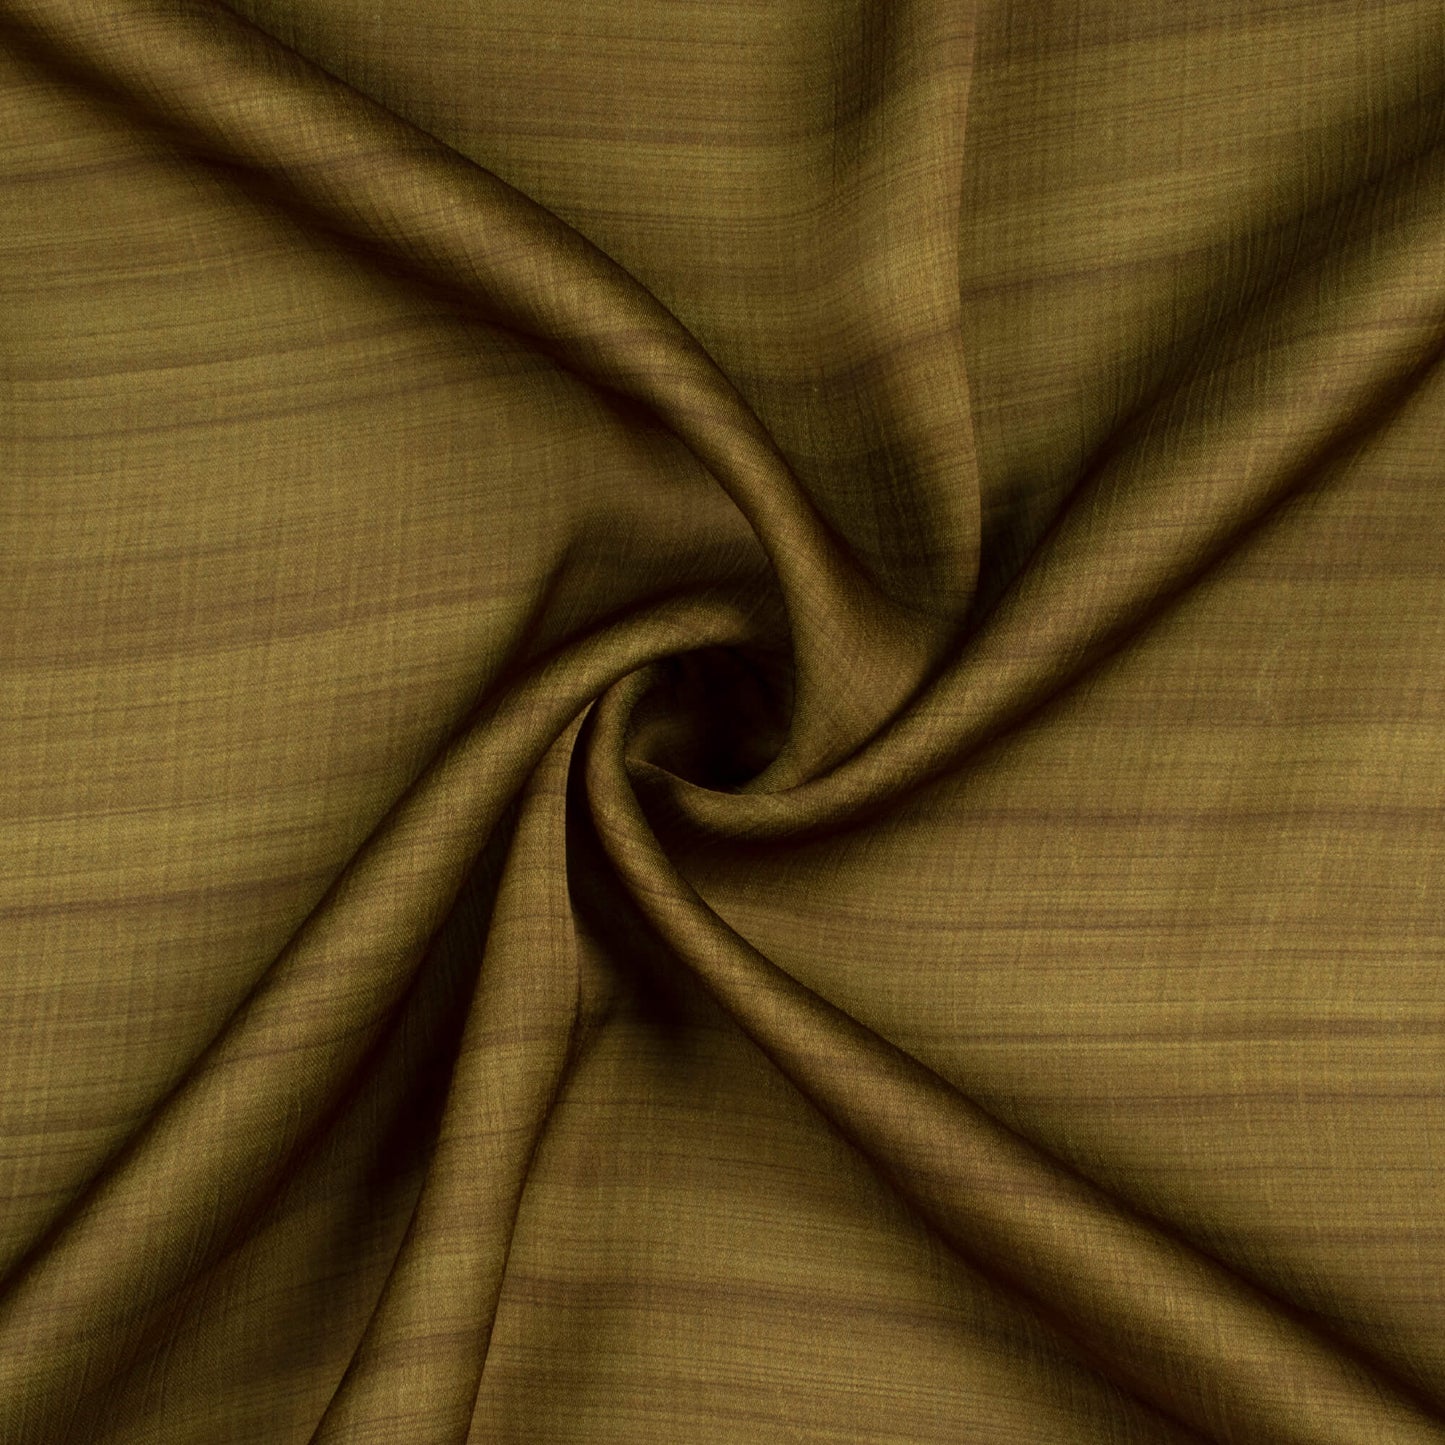 Olive Green Texture Pattern Digital Print Chiffon Satin Fabric